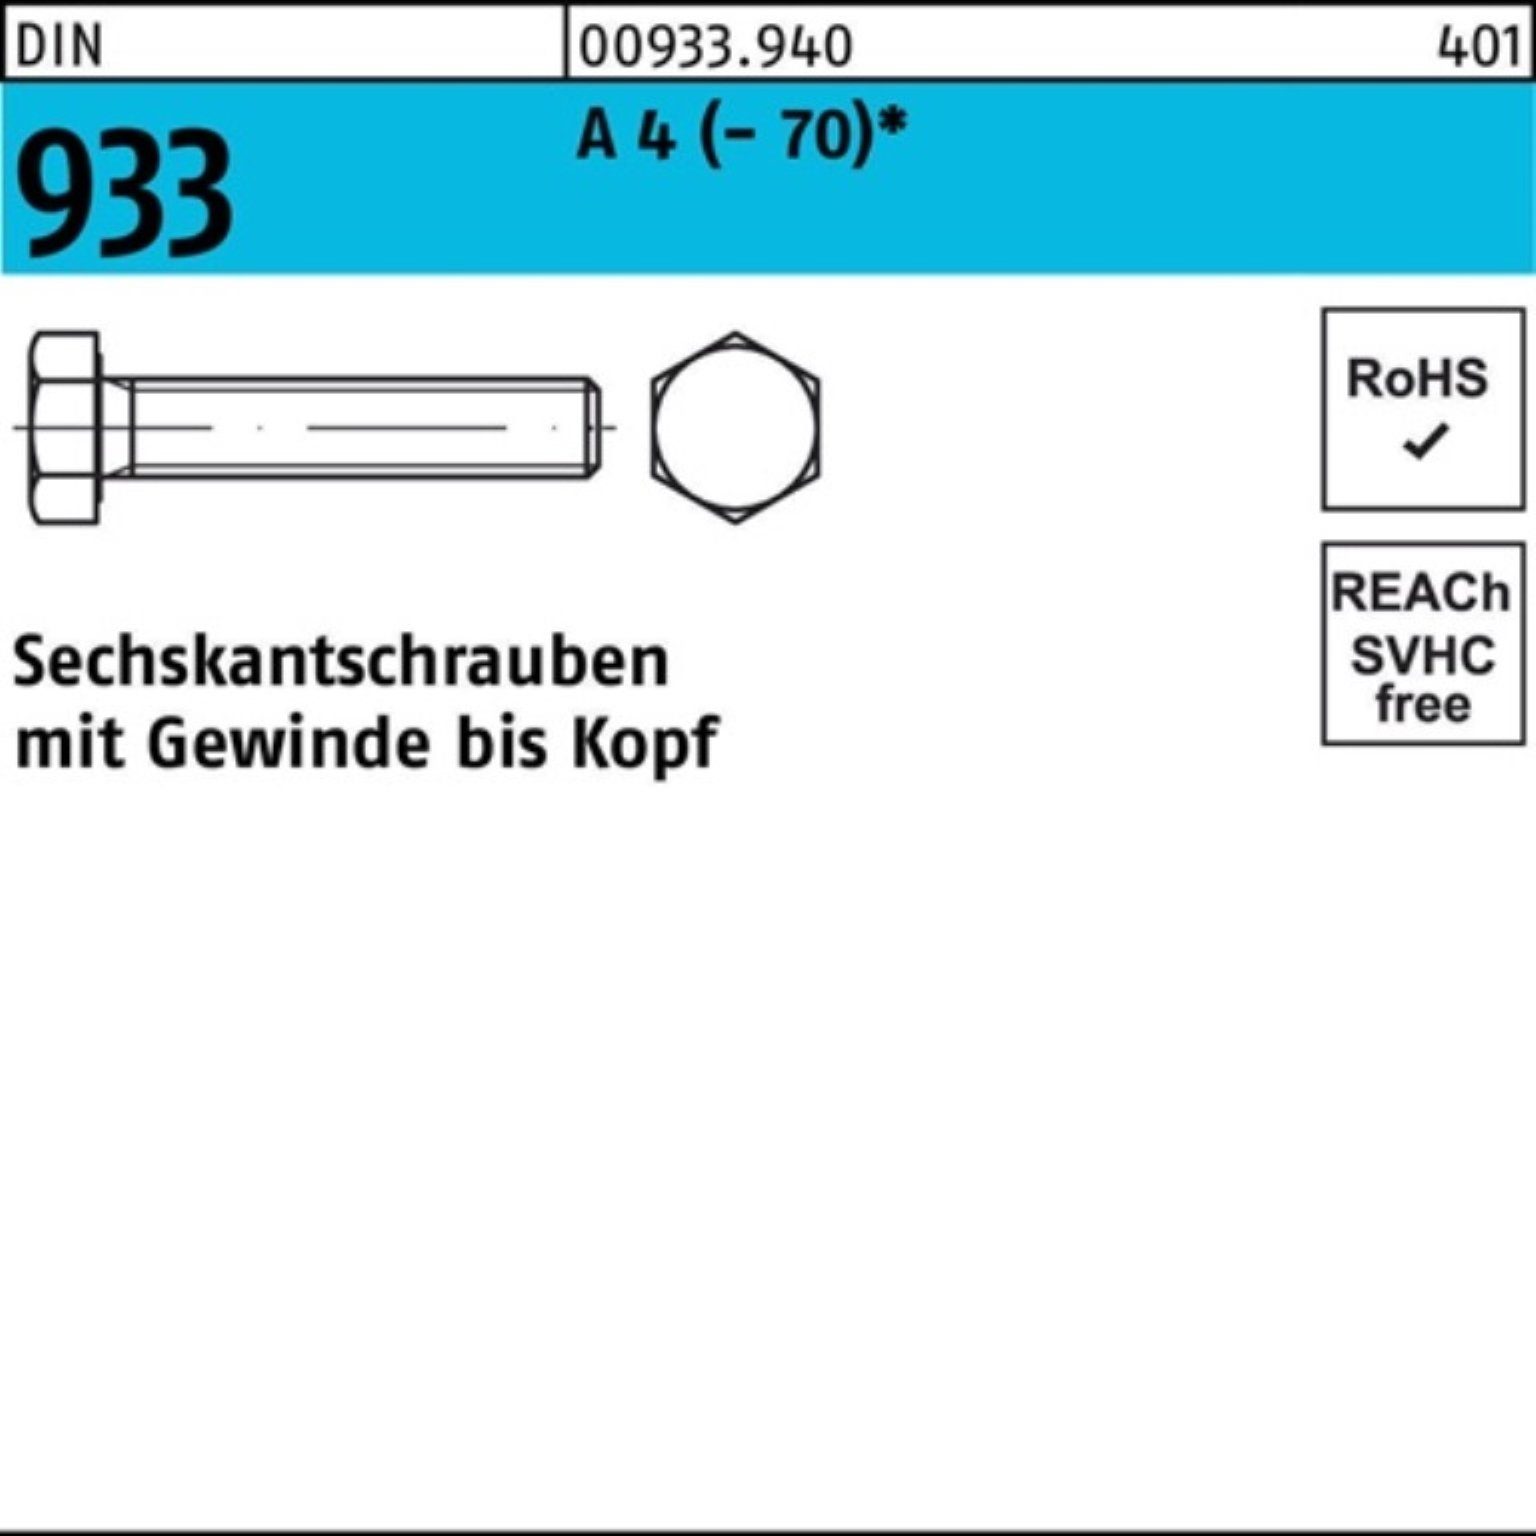 Reyher Sechskantschraube 500er Pack Sechskantschraube DIN 933 VG M6x 10 A 4 (70) 500 Stück D